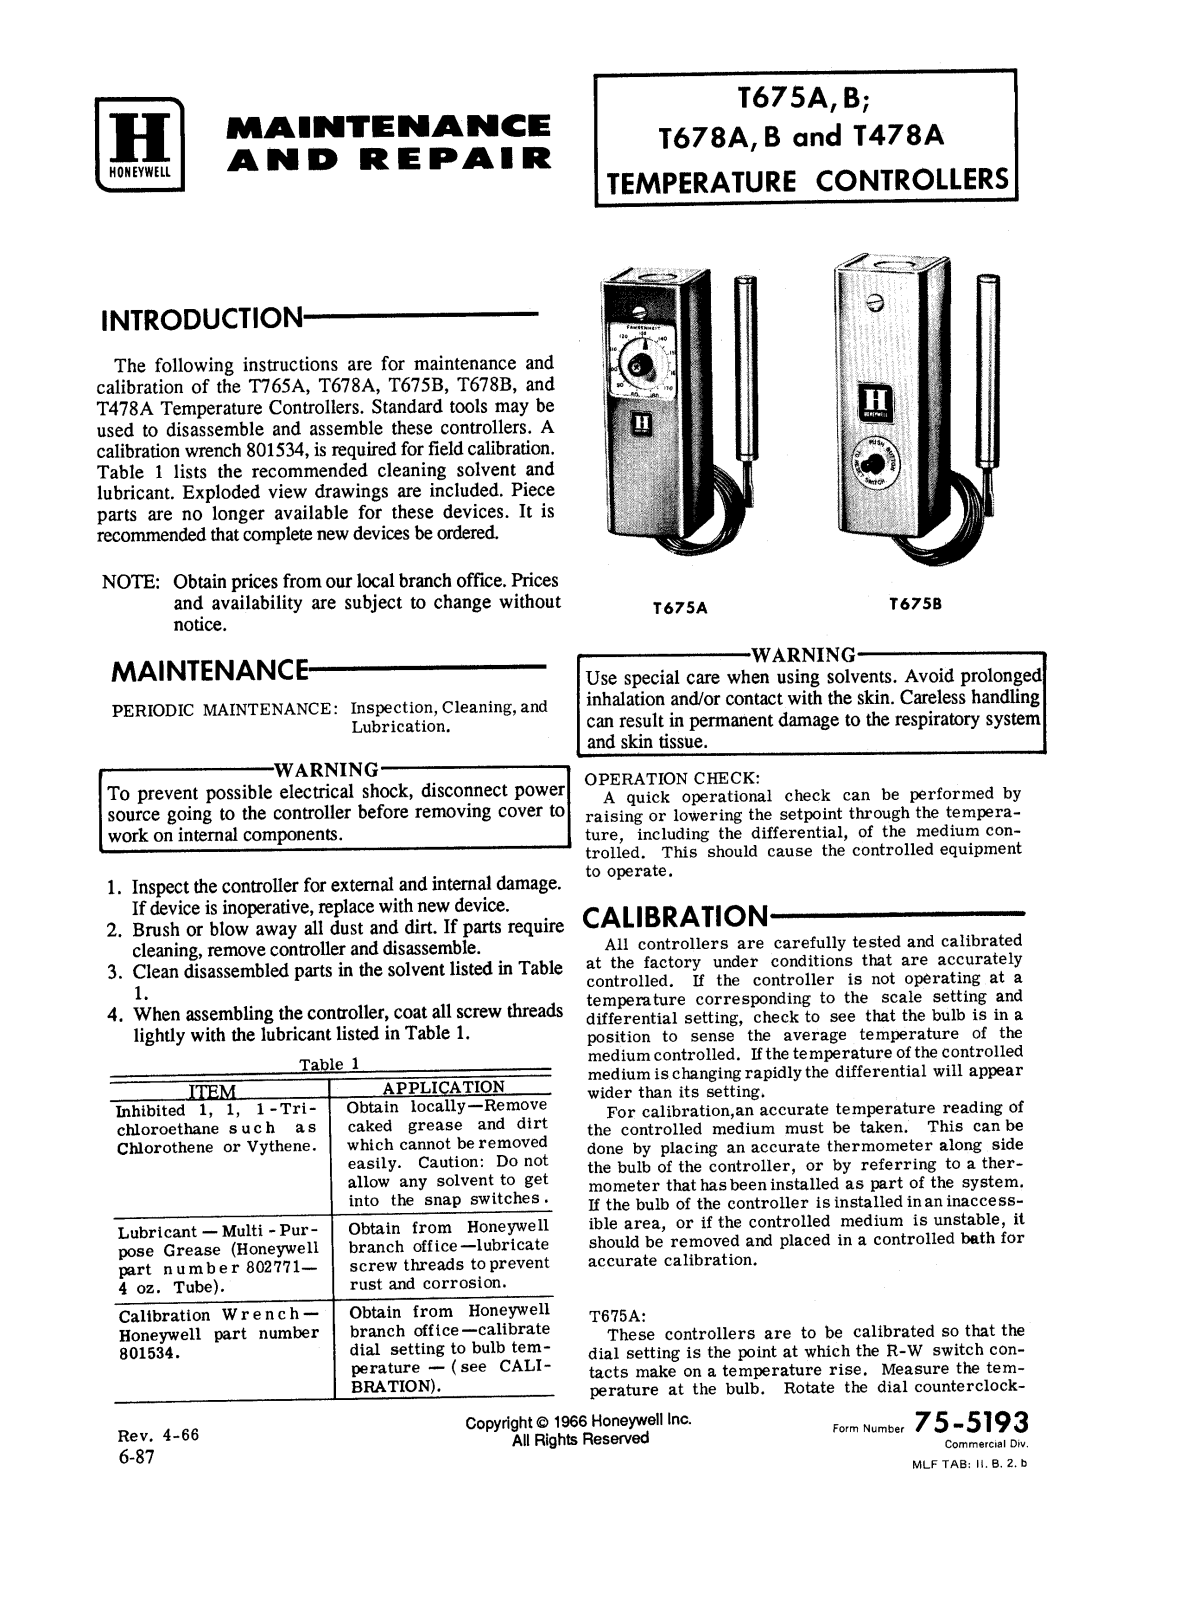 Honeywell T675A, T675B, T678A, T678B, T478A Reference Manual